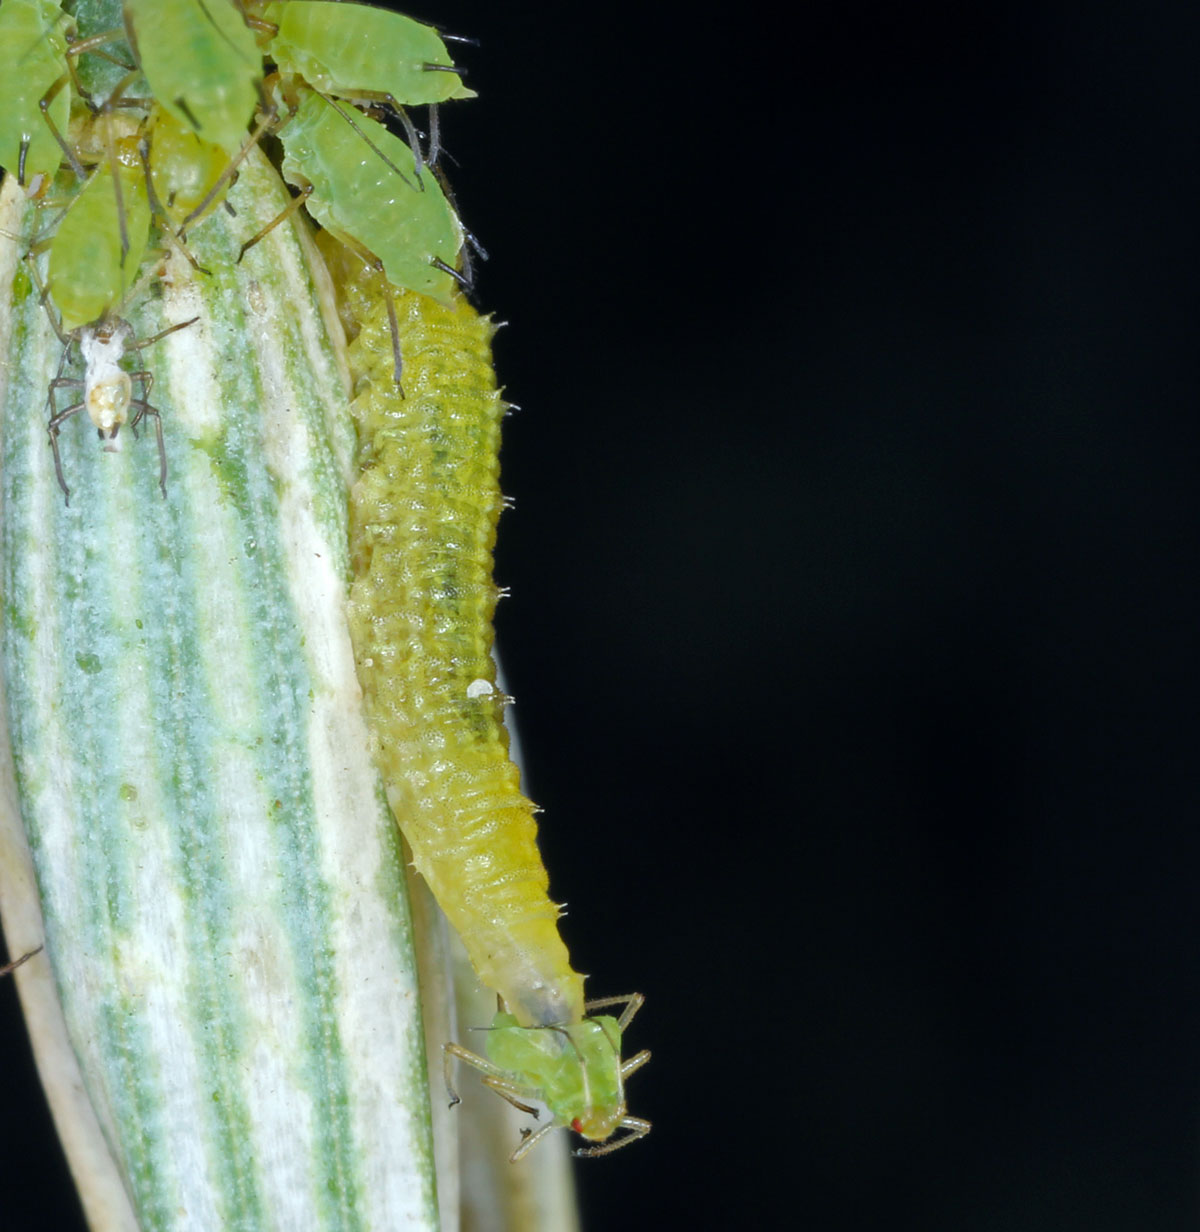 Zelená larva pestřenky požírá mšici